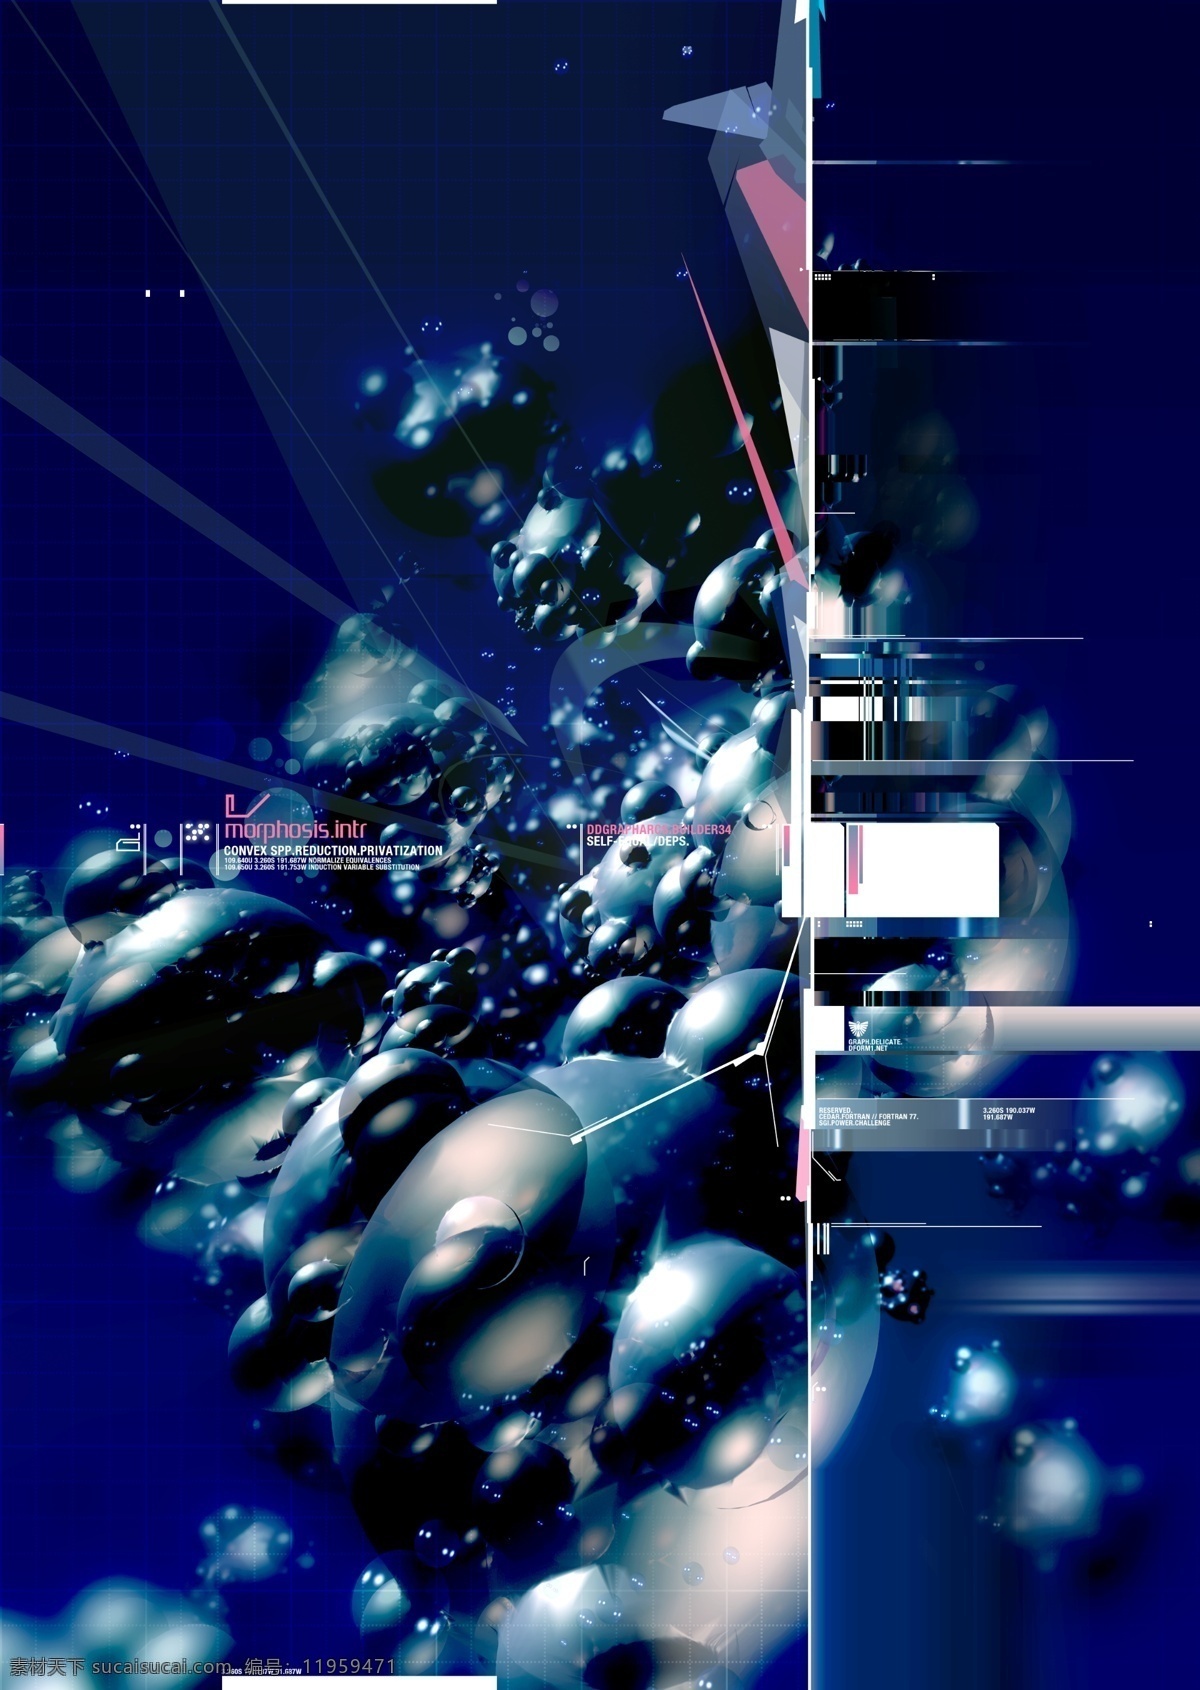 蓝色泡泡图形 蓝色 黑色 光线 射线 抽象 线条 梦幻 s模糊 感觉 超现代 朦胧 阶梯 层次 泡泡 数码 前卫 放射 艺术 现代科技